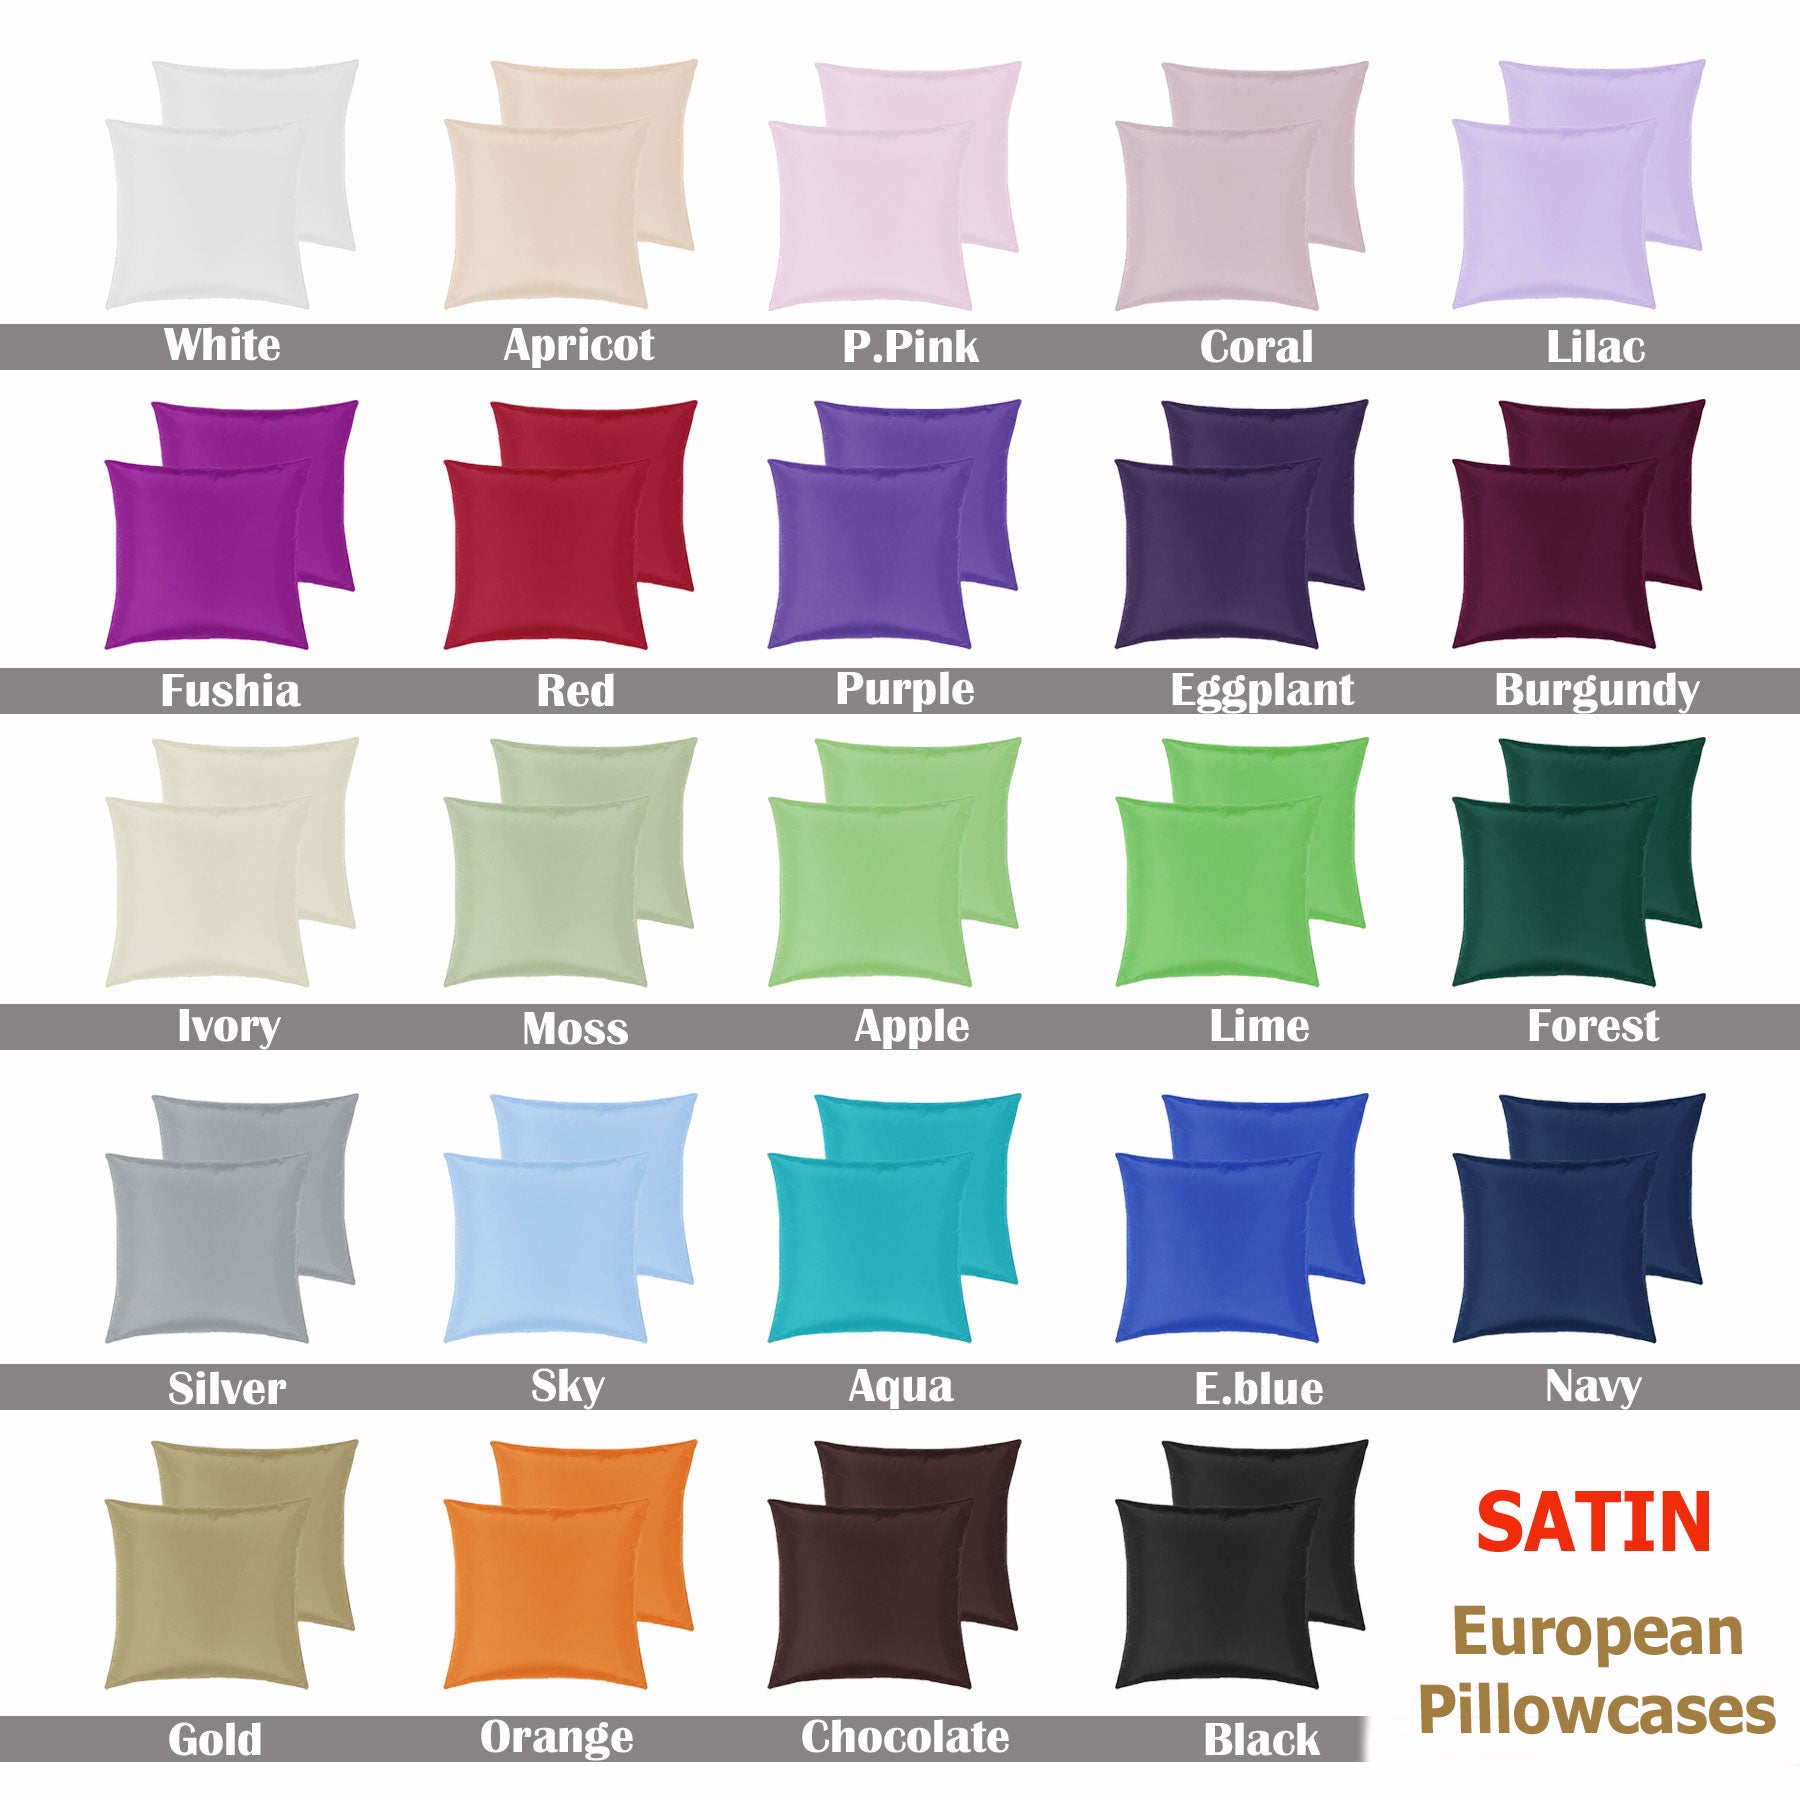 PepperMIll Satin European Pillowcases ( Pair ) IVORY